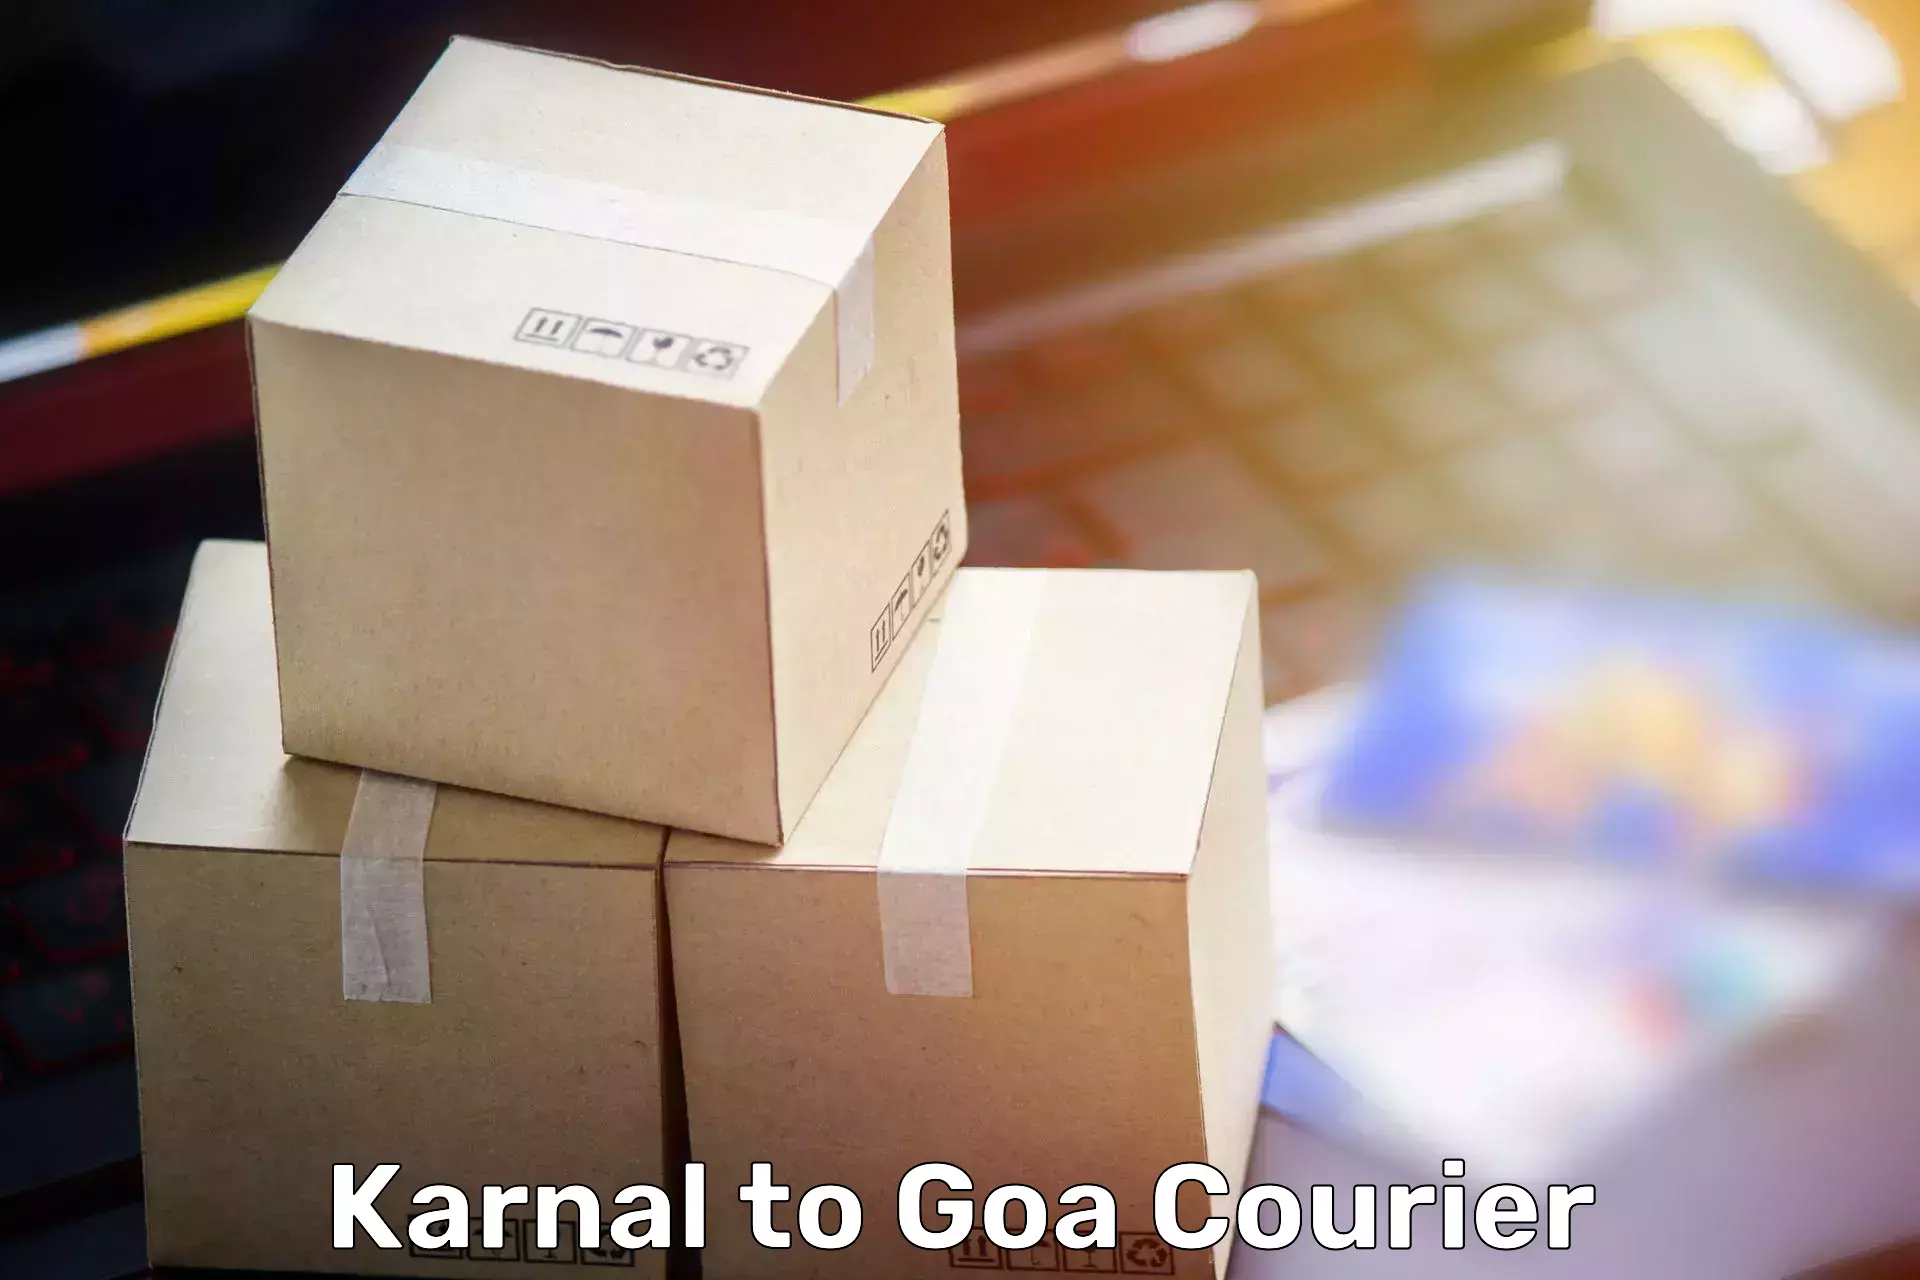 Household goods transporters Karnal to Vasco da Gama